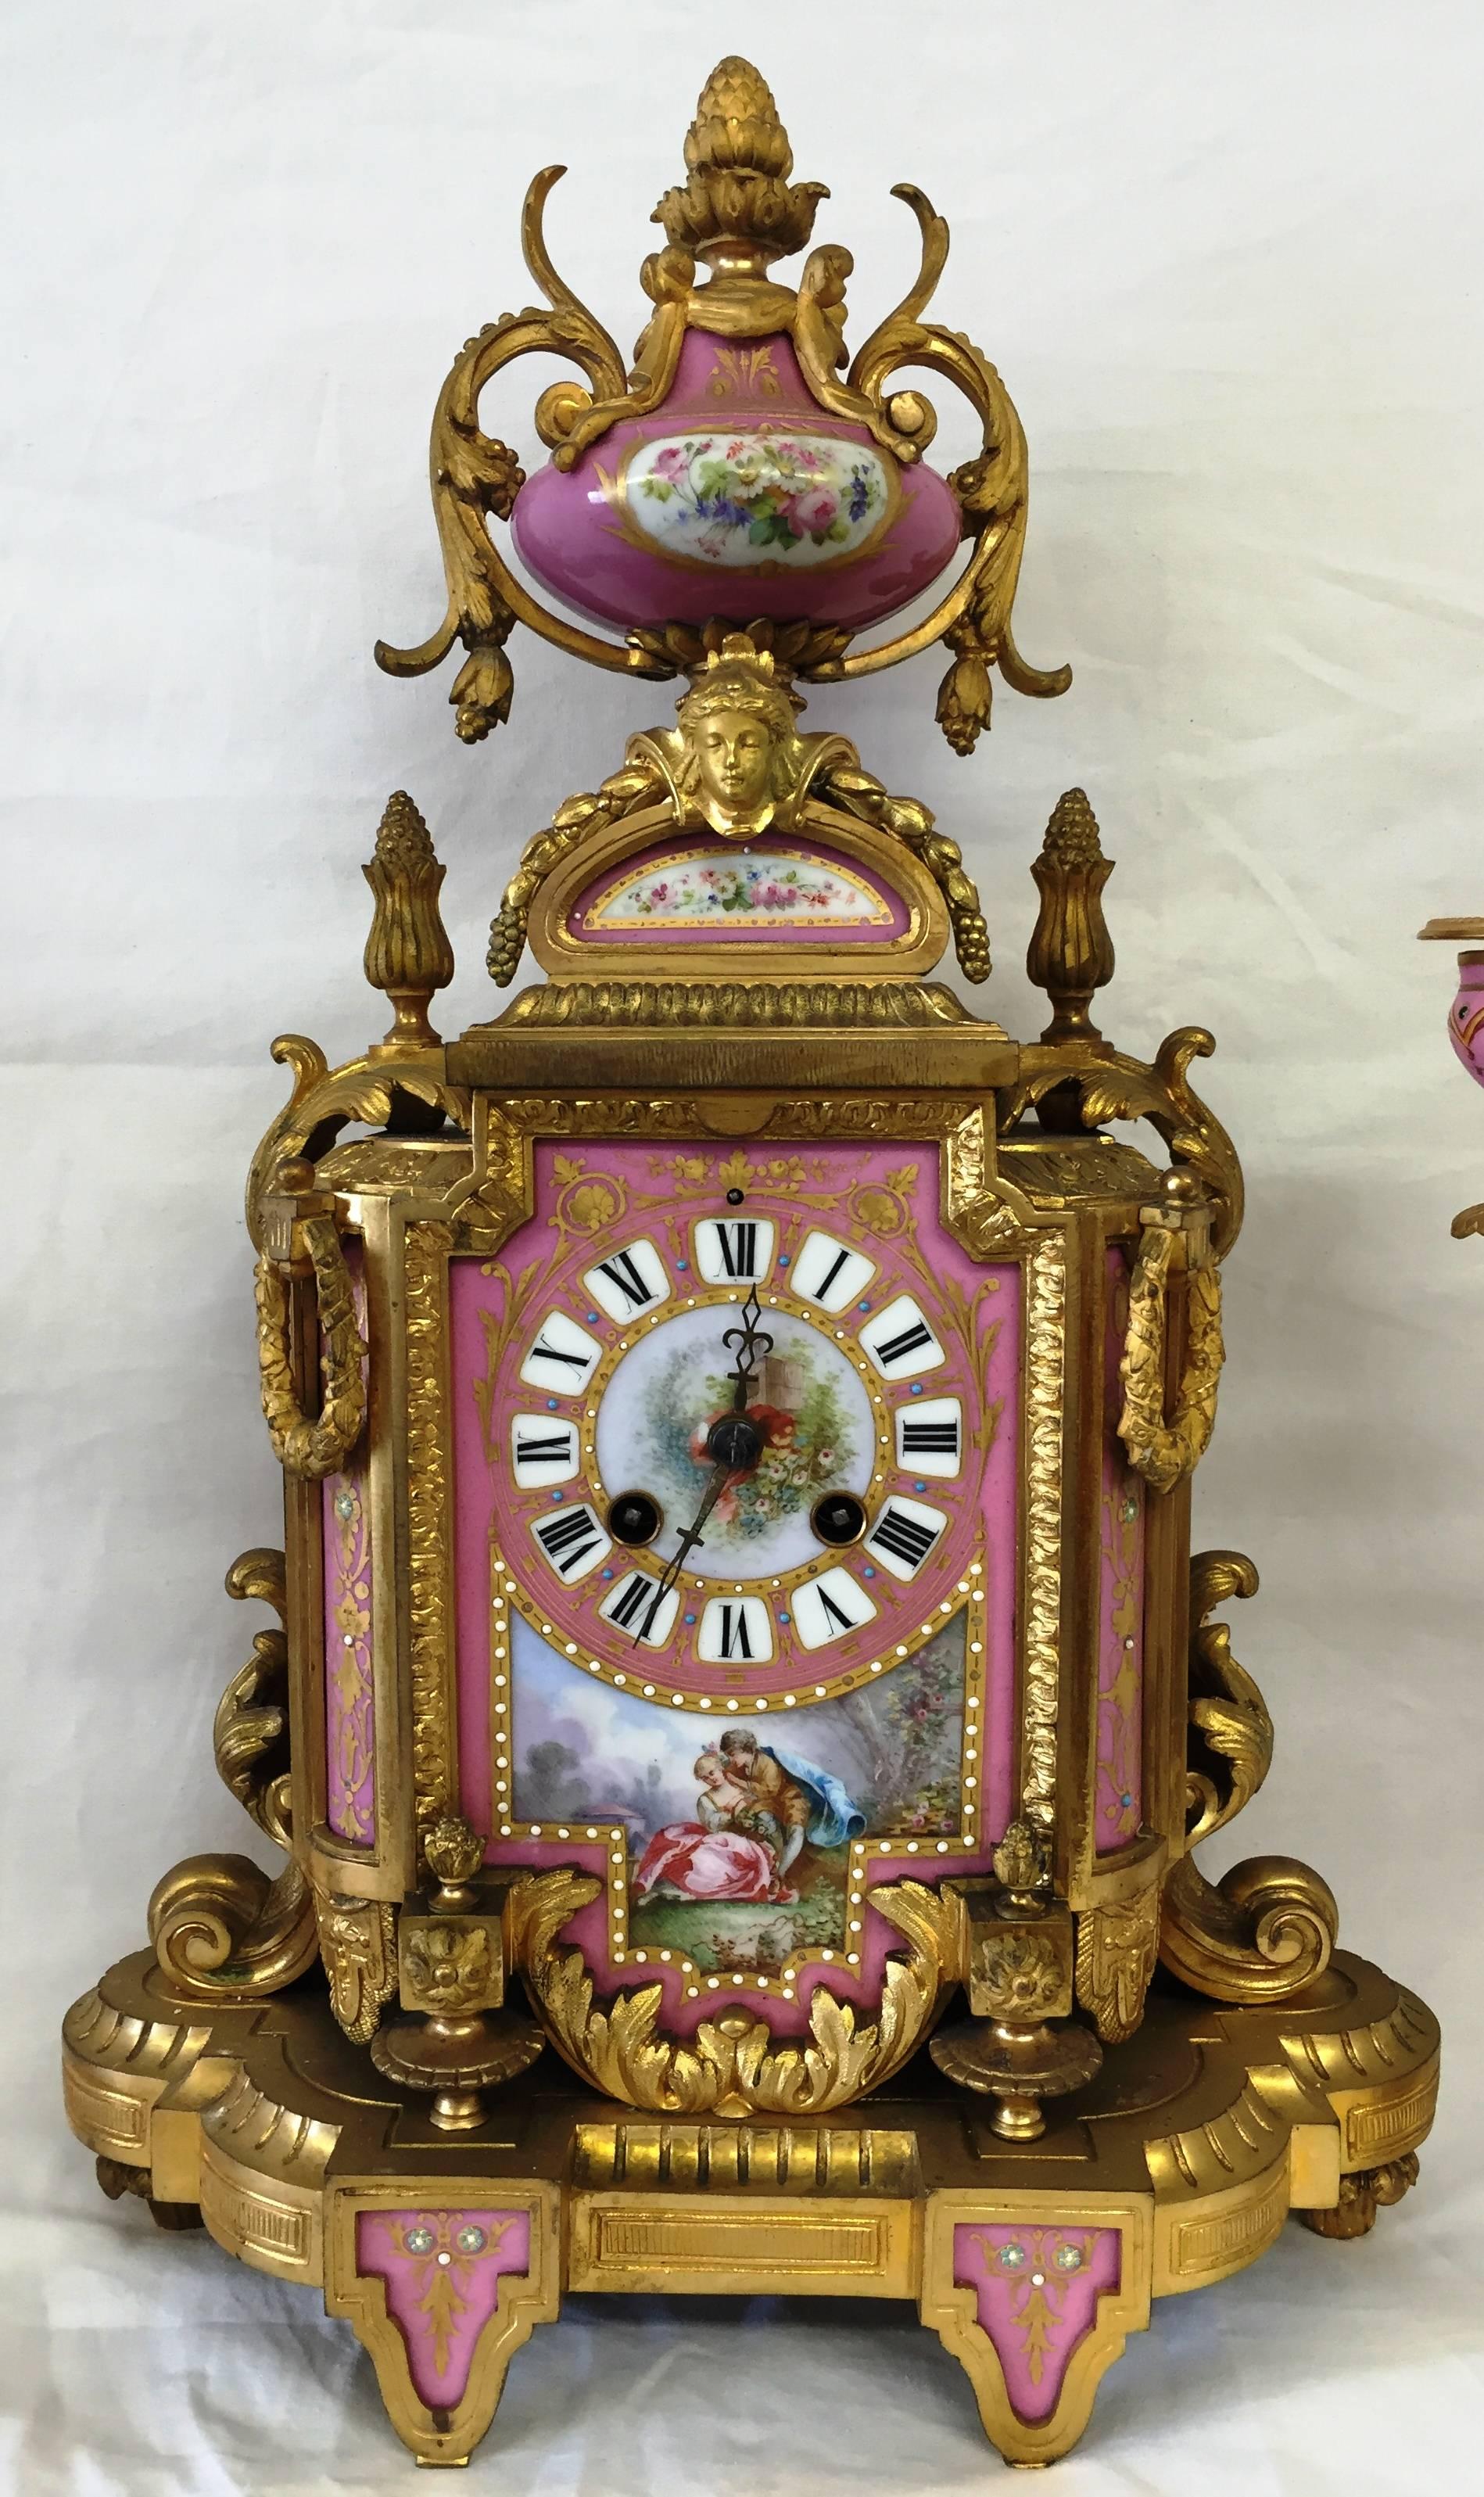 Eine gute Qualität Französisch, 19. Jahrhundert rosa Sèvres Porzellan und vergoldeten Ormolu Uhr gesetzt. Mit einer klassischen Urne auf der Oberseite, einem acht Tage läutenden Uhrwerk. Eine romantische Szene auf der zentralen Platte und ein Paar